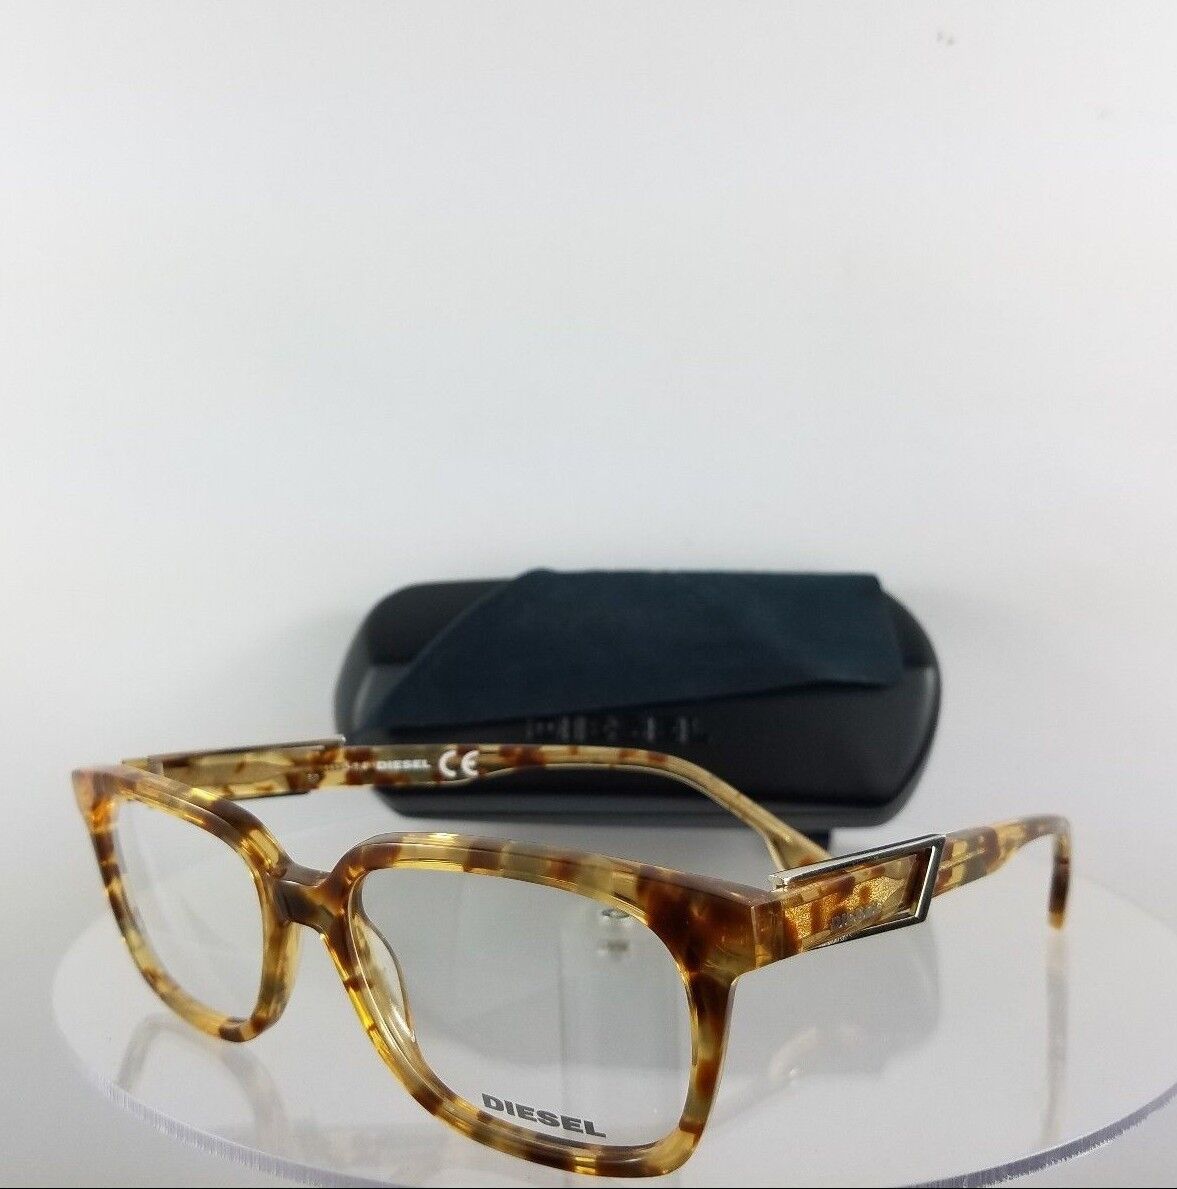 100% Authentic Brand New Diesel Eyeglasses DL 5111 Light Tortoise 053 Frame